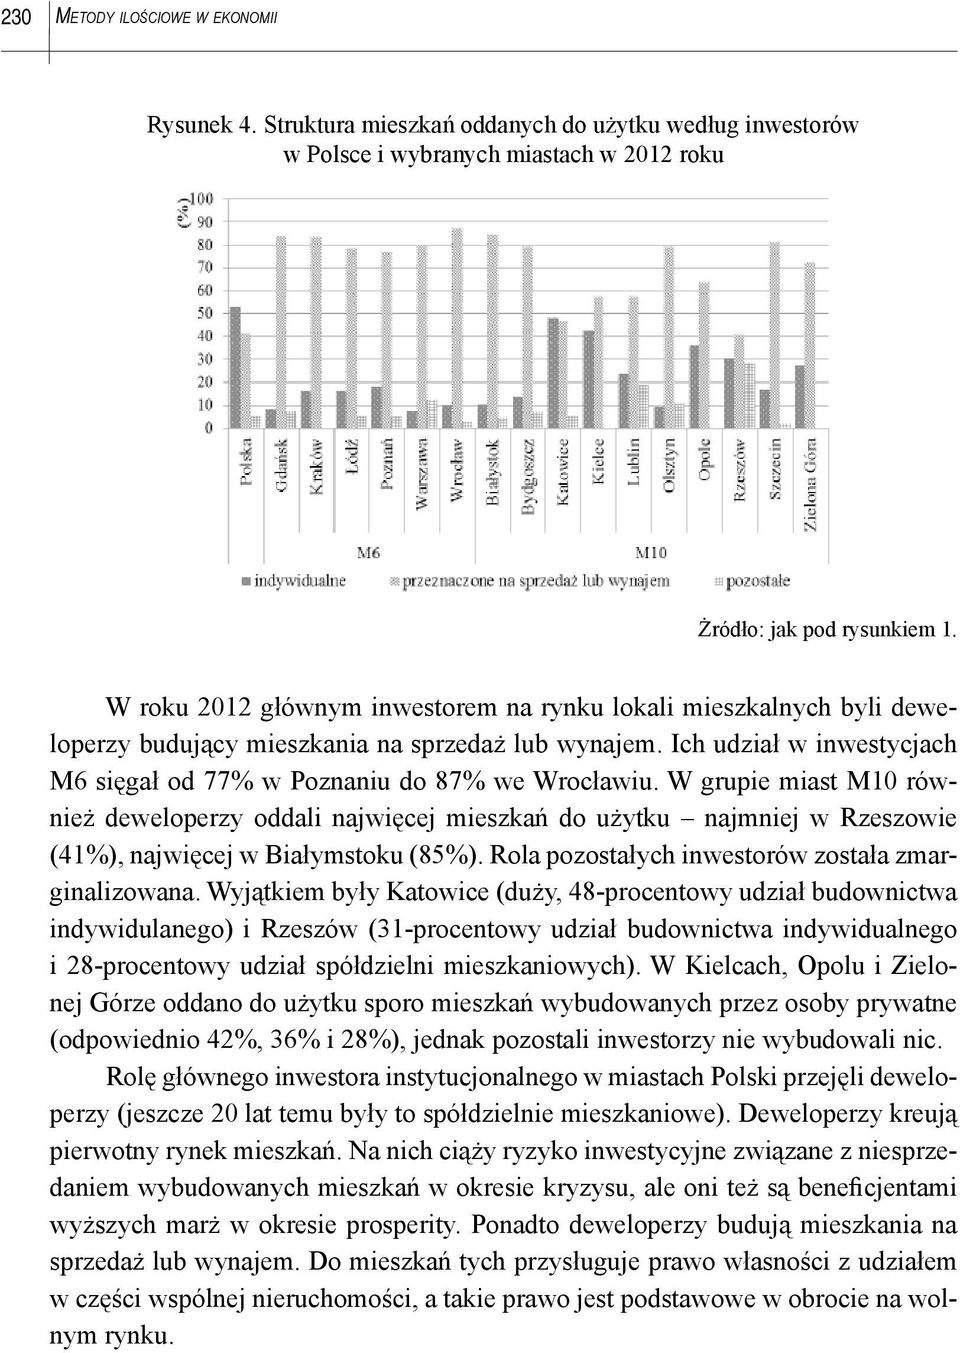 W grupie miast M10 również deweloperzy oddali najwięcej mieszkań do użytku najmniej w Rzeszowie (41%), najwięcej w Białymstoku (85%). Rola pozostałych inwestorów została zmarginalizowana.